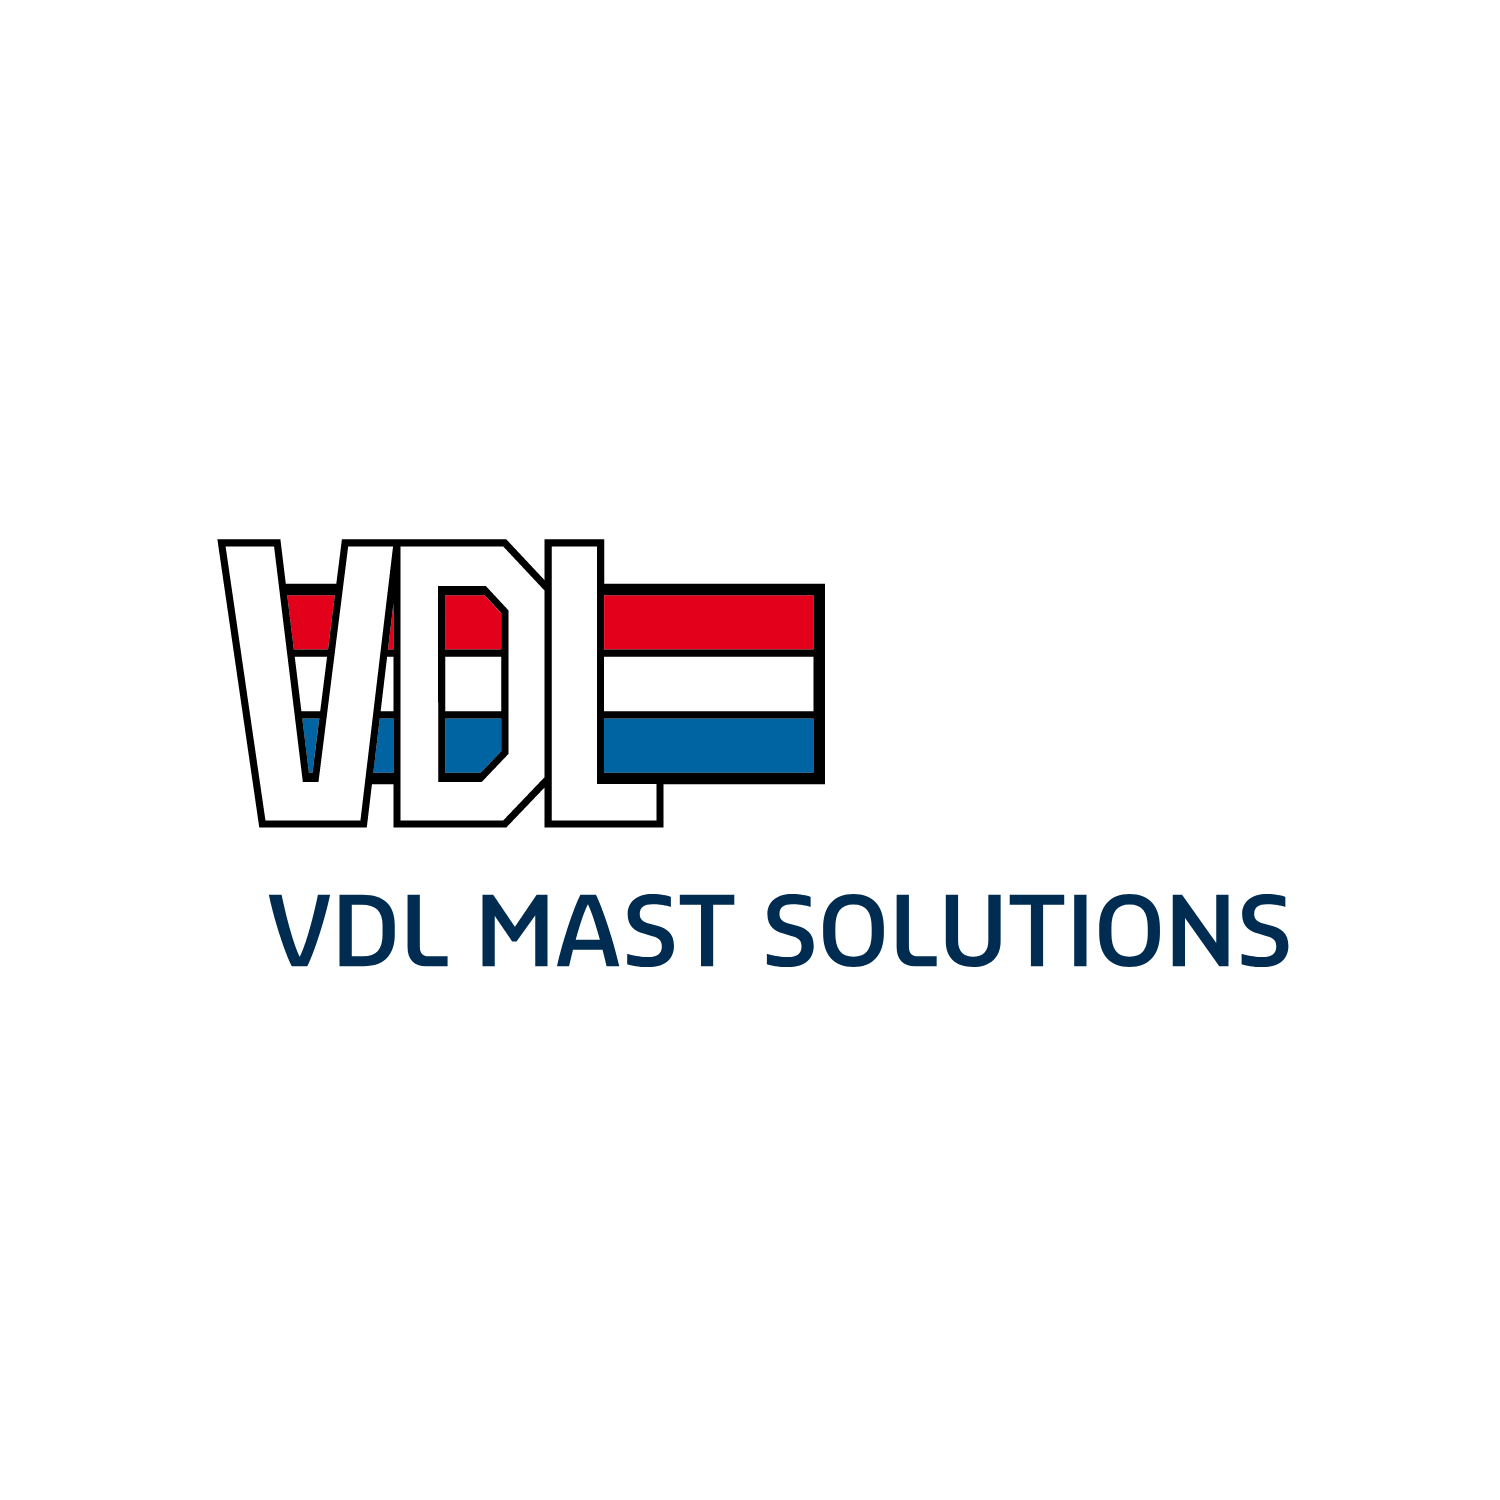 VDL Mast Solutions